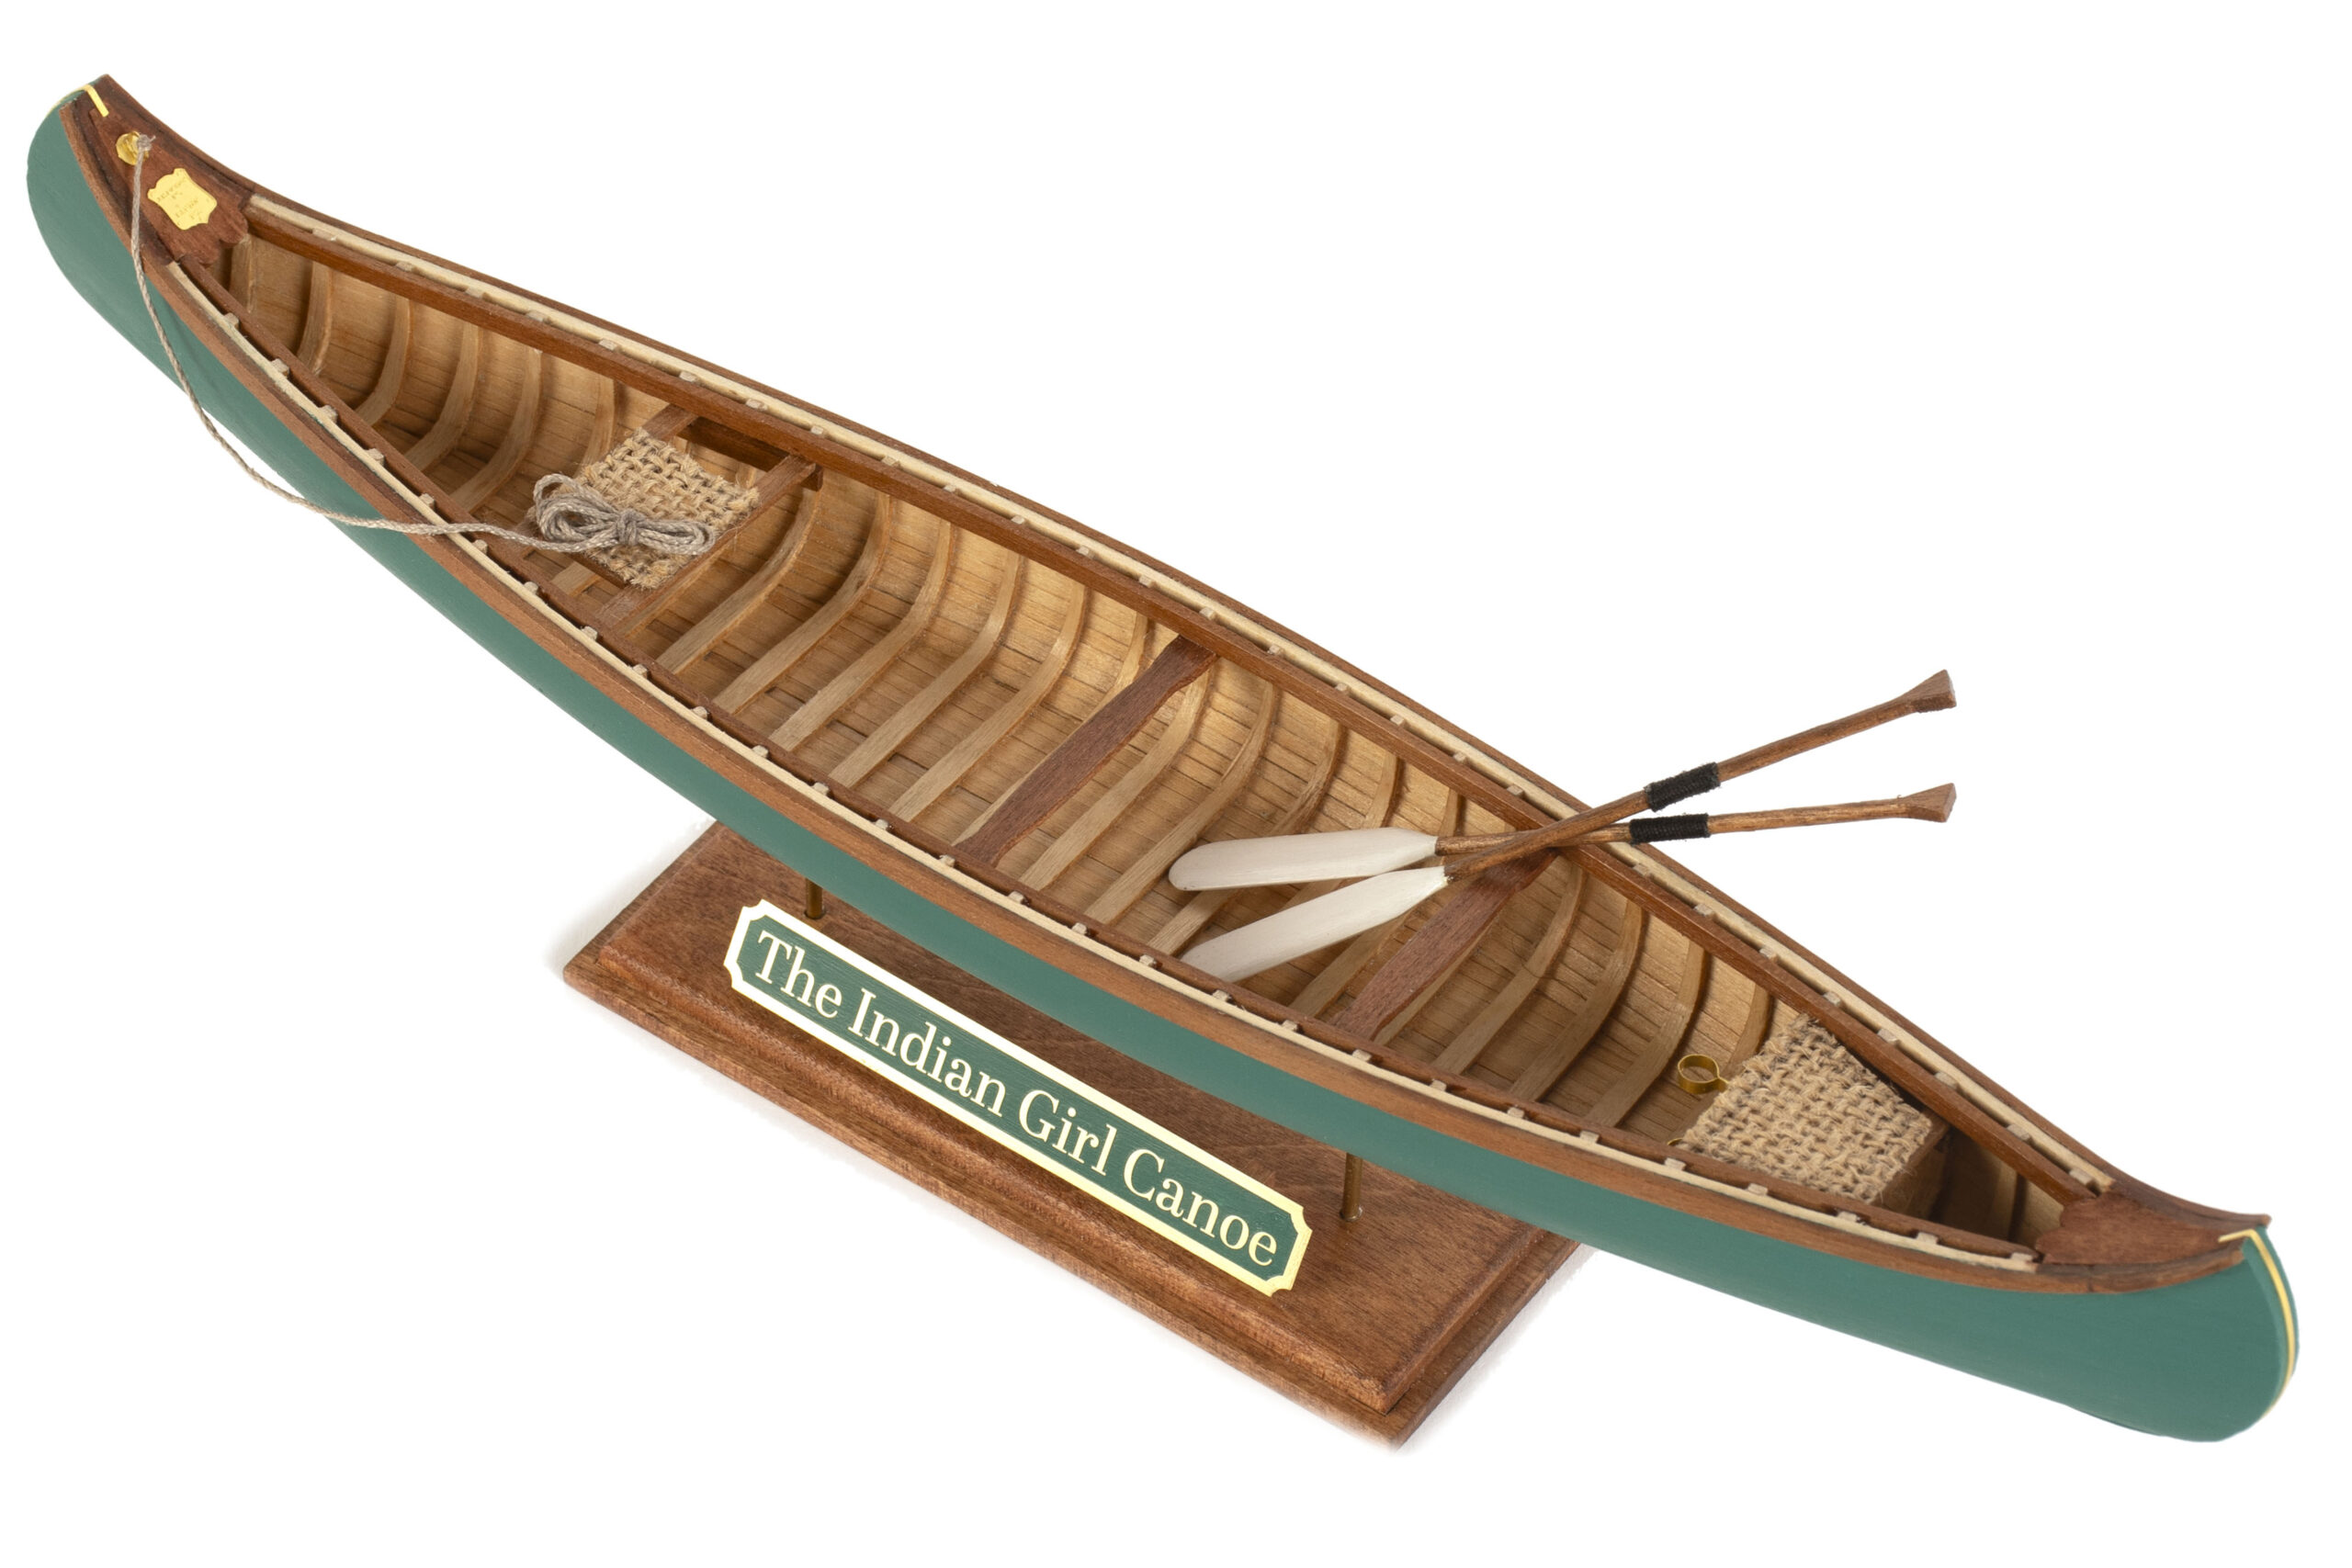 Maqueta Indian Girl Canoe (19000) a Escala 1:16. Kit de Modelismo Naval en Madera para Principiantes, de Artesanía Latina.